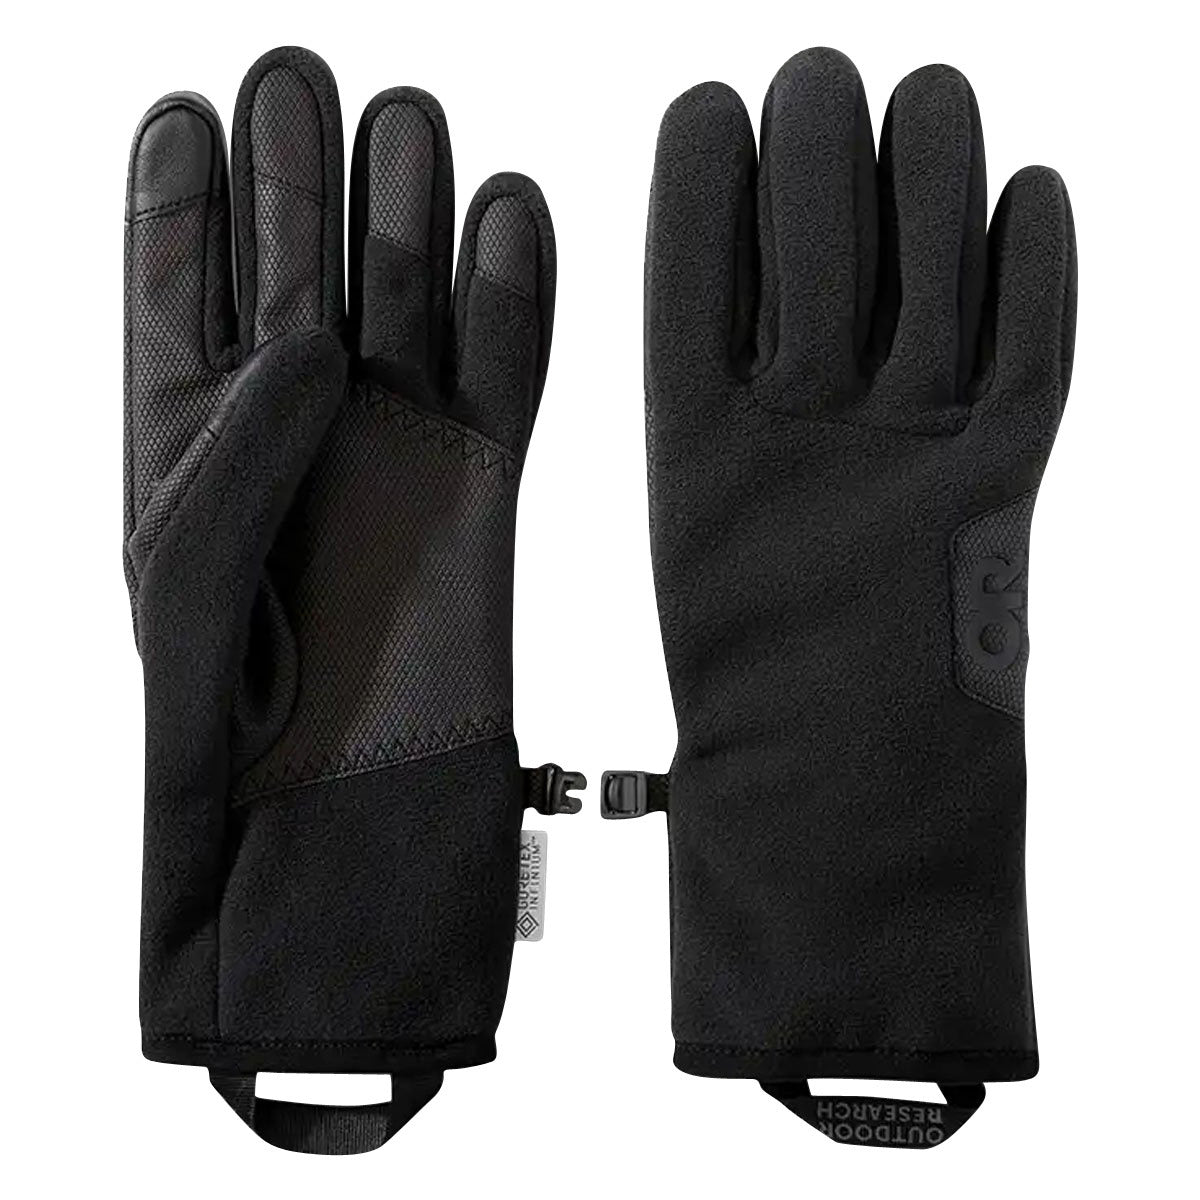 Outdoor Research Men’s Gripper Sensor Gloves in  by GOHUNT | Outdoor Research - GOHUNT Shop